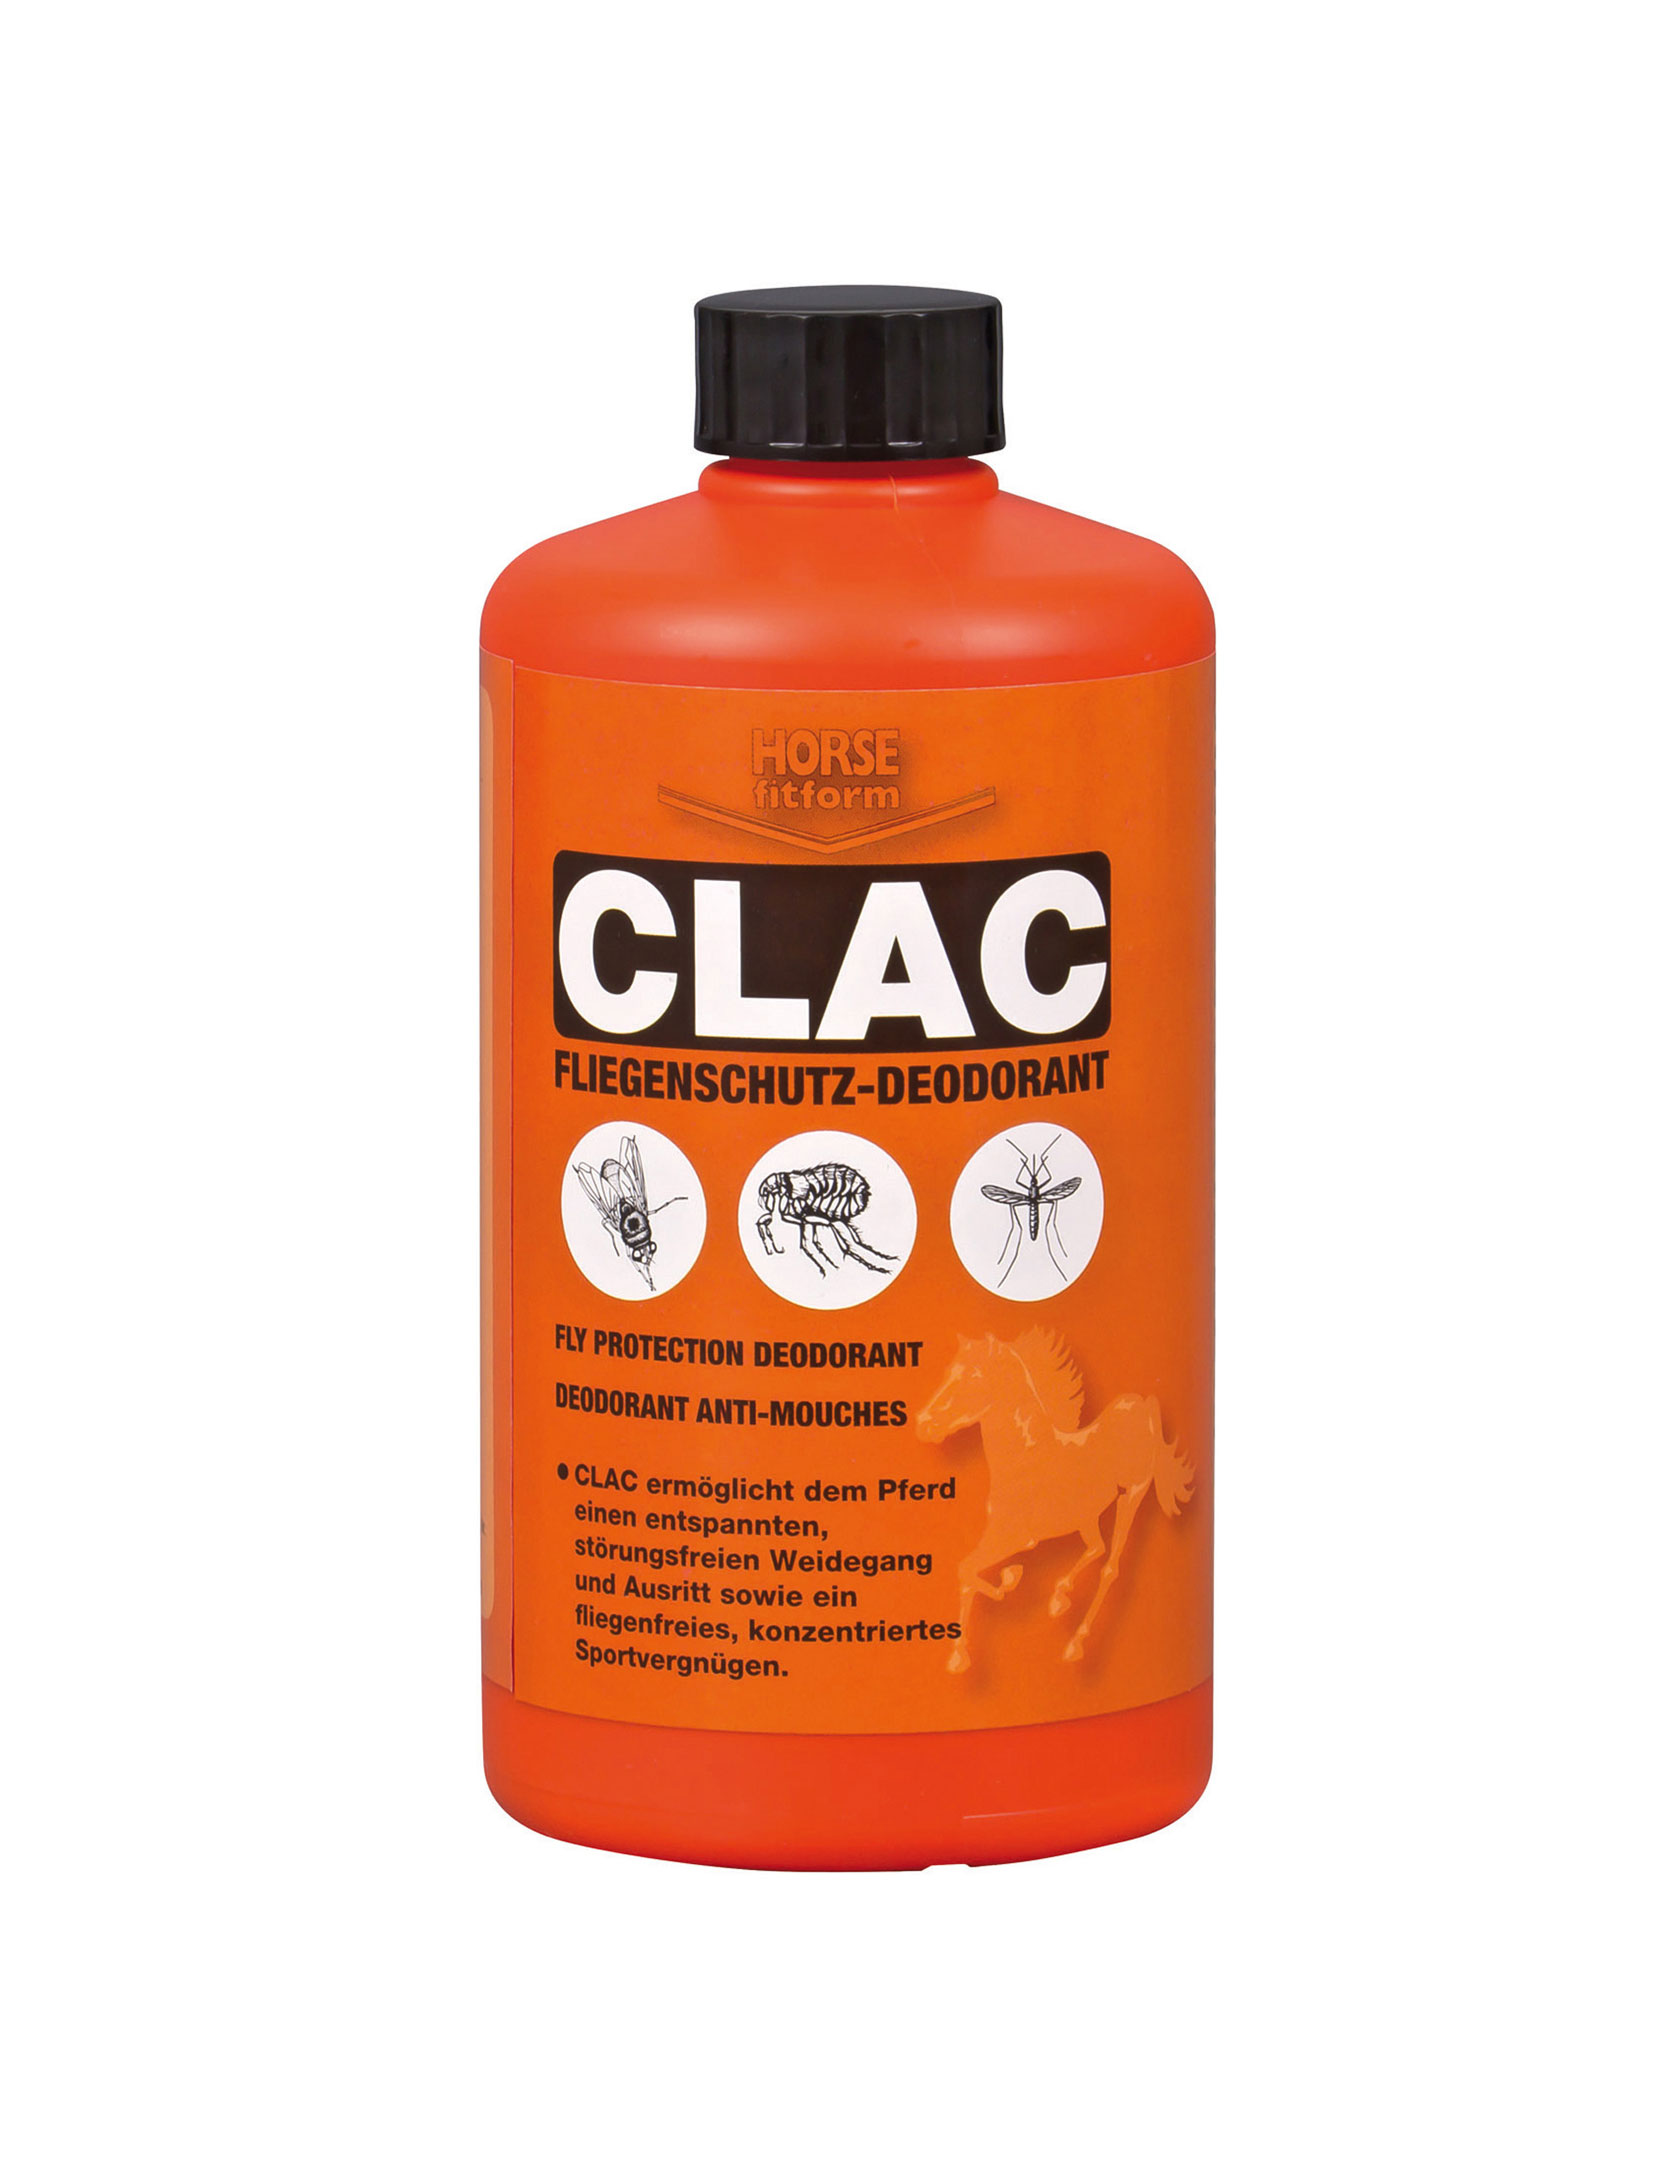 CLAC Fliegenschutz-Deodorant